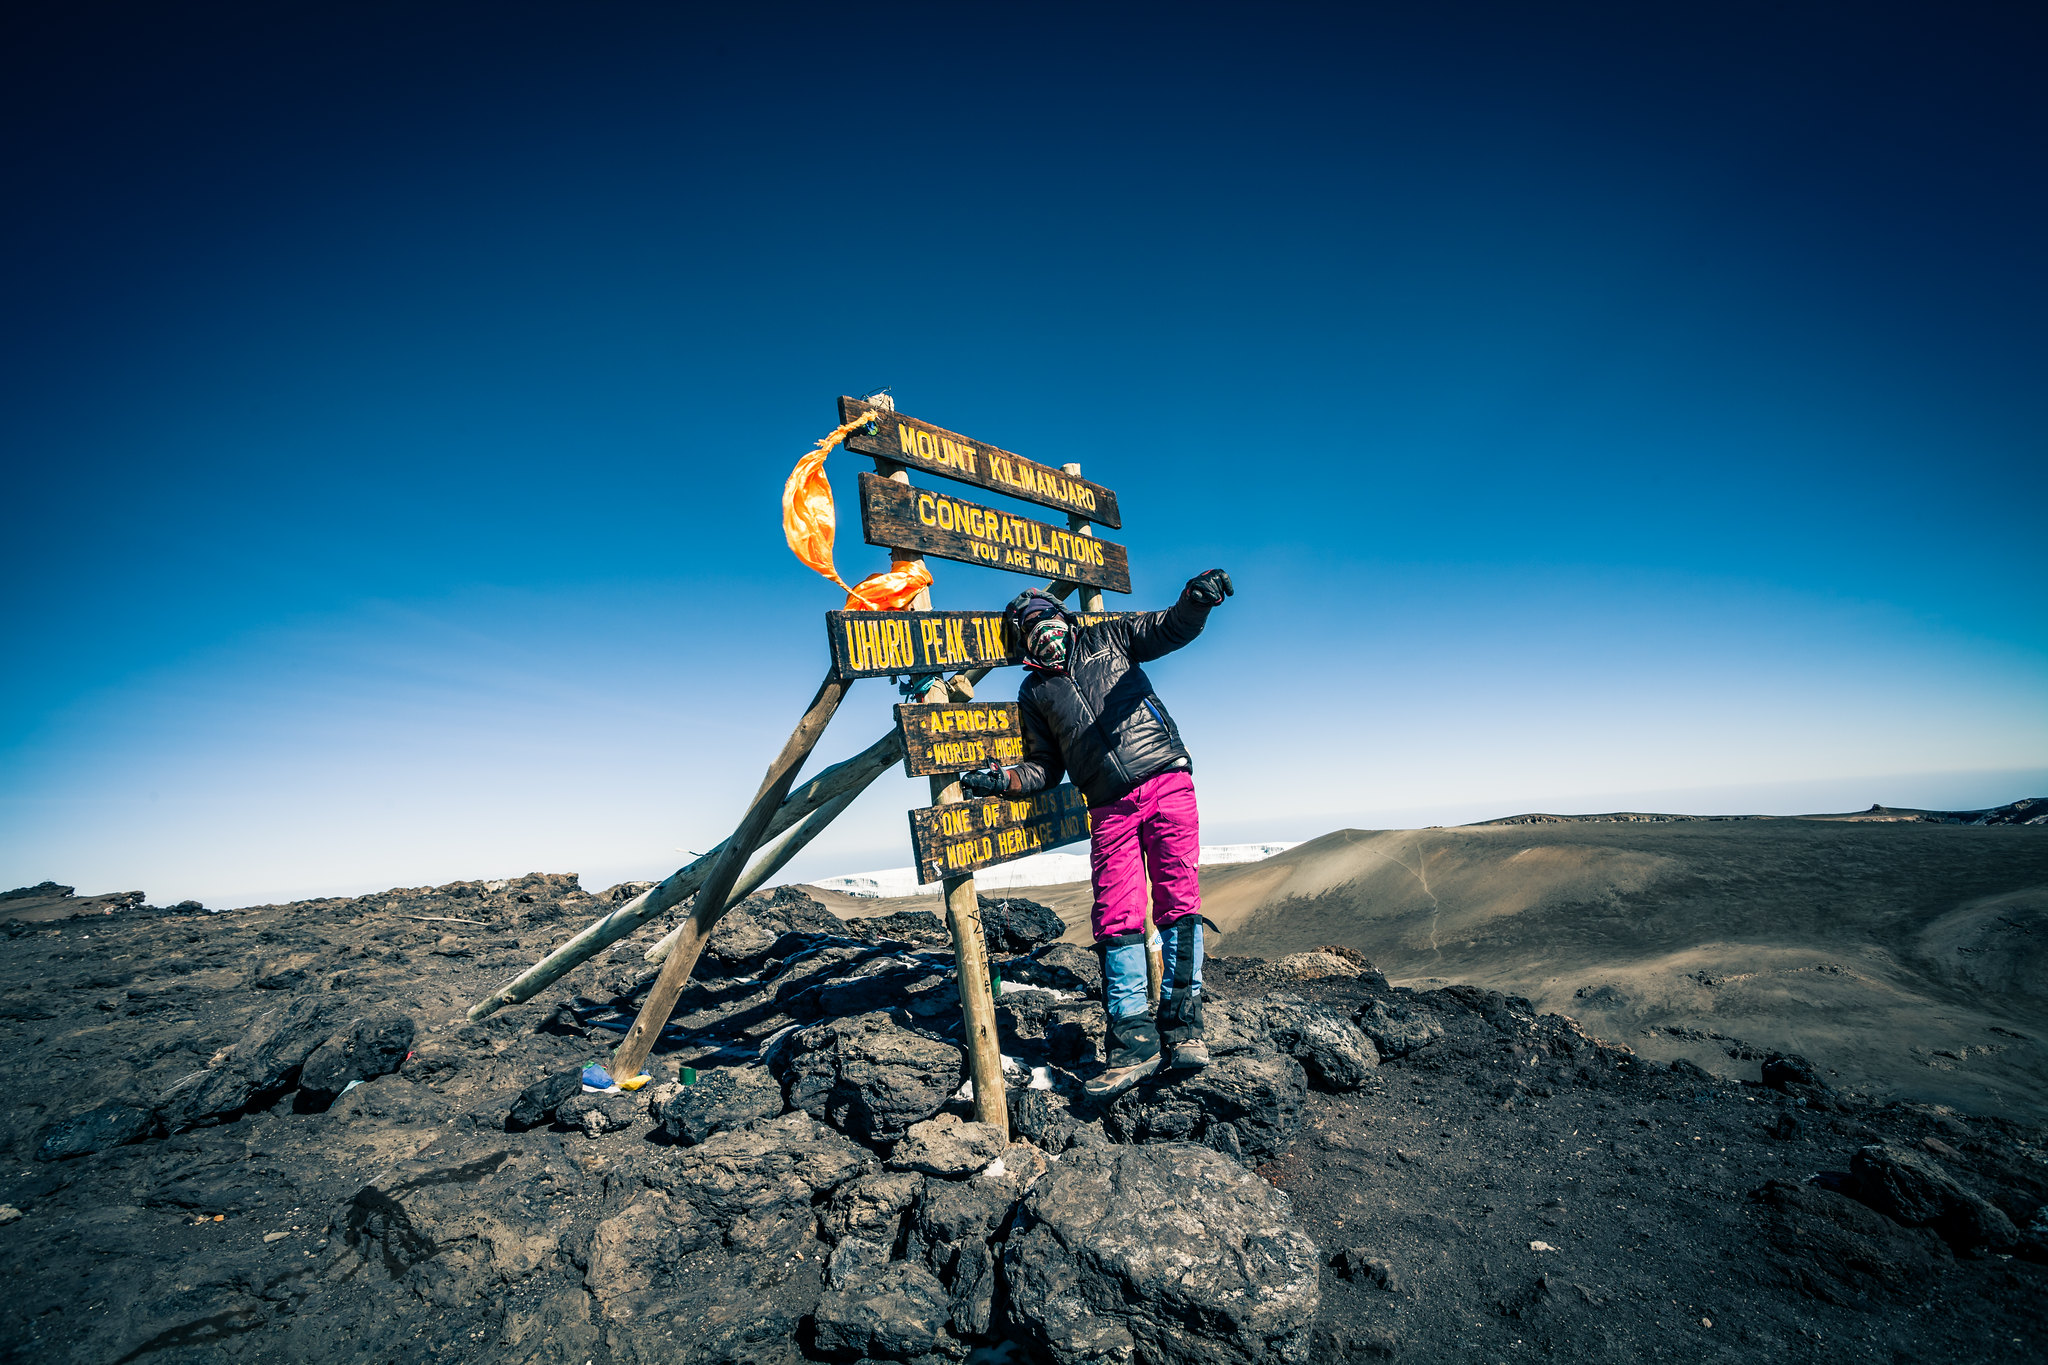 Uhuru Peak, Mount Kilimanjaro